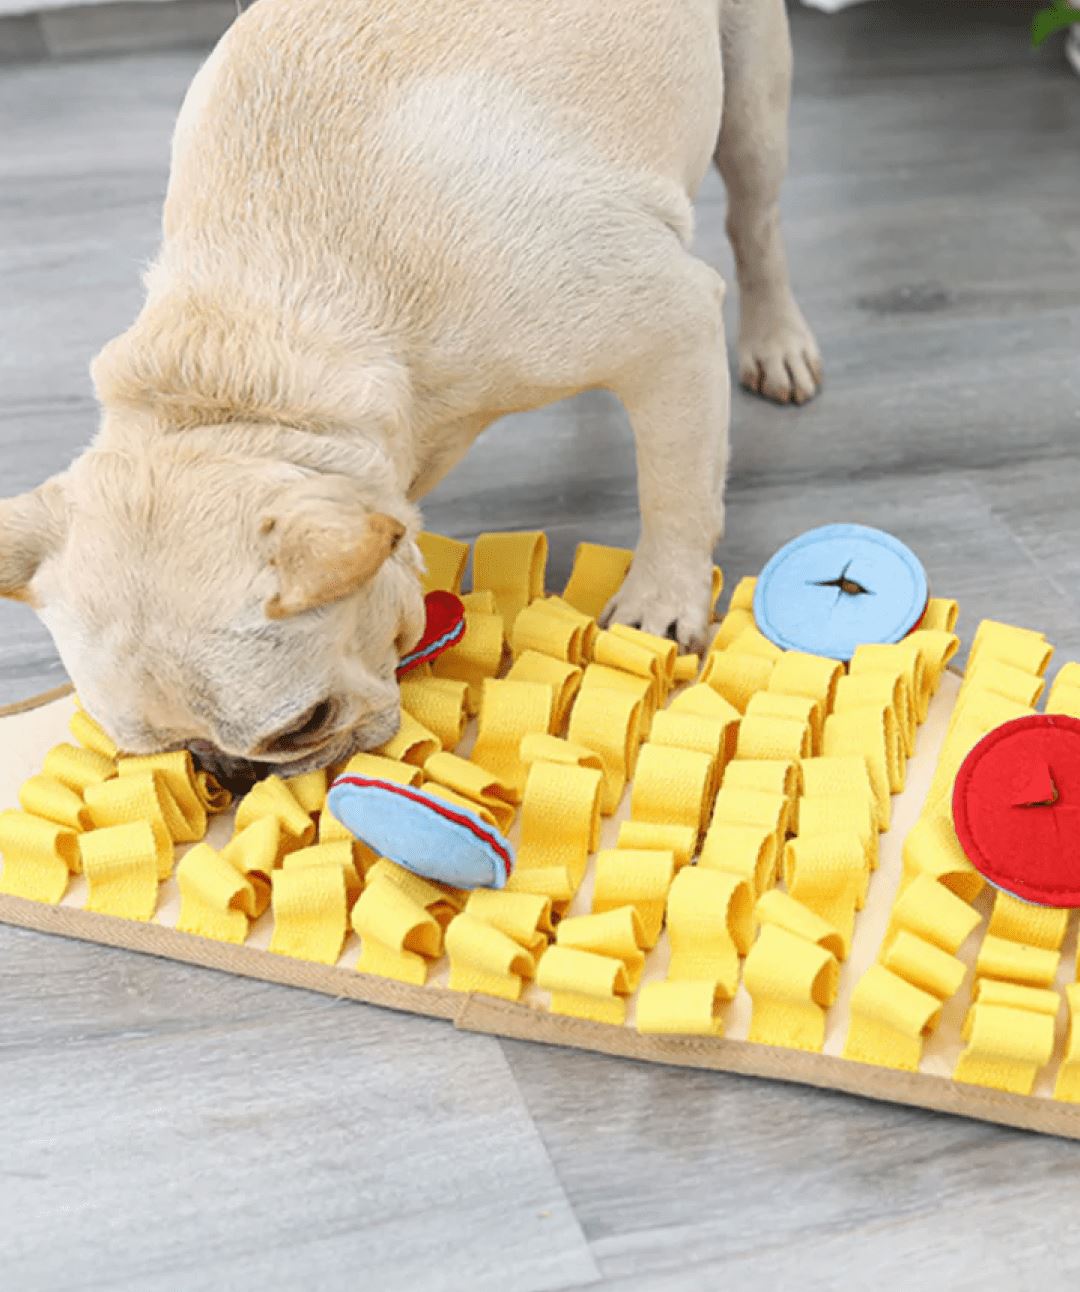 MiMu Dog Puzzle Toy Blue Paw Shape Dog Food Puzzle Training